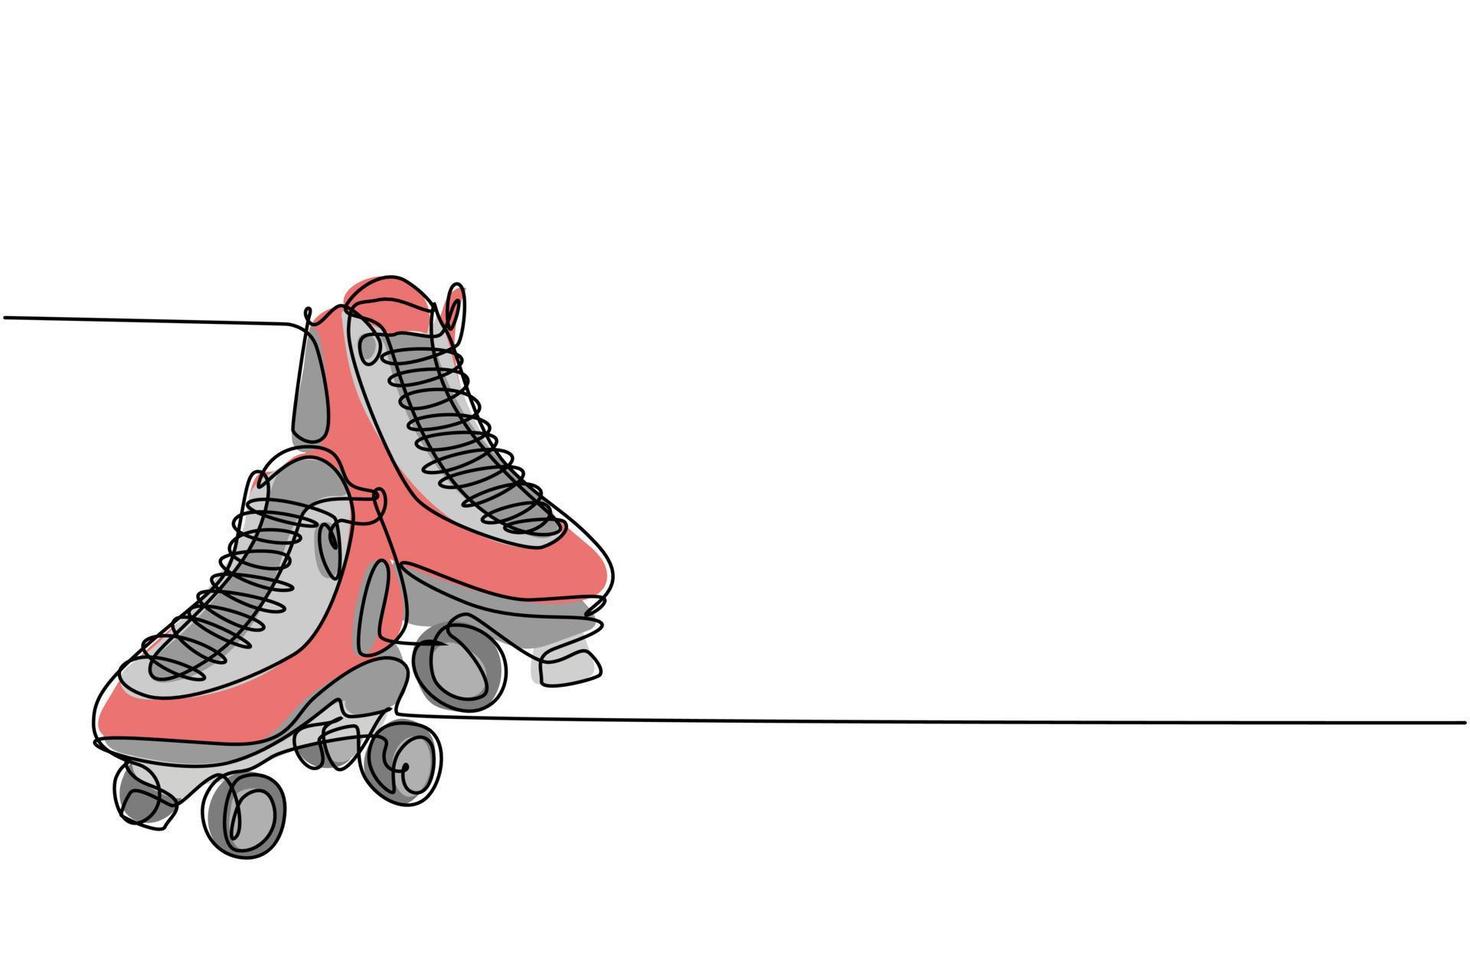 eine einzige Strichzeichnung eines Paares alter Retro-Quad-Rollschuh-Schuhe aus Kunststoff. trendige klassische Sportkonzept-kontinuierliche Linie zeichnen Grafikdesign-Vektorillustration vektor